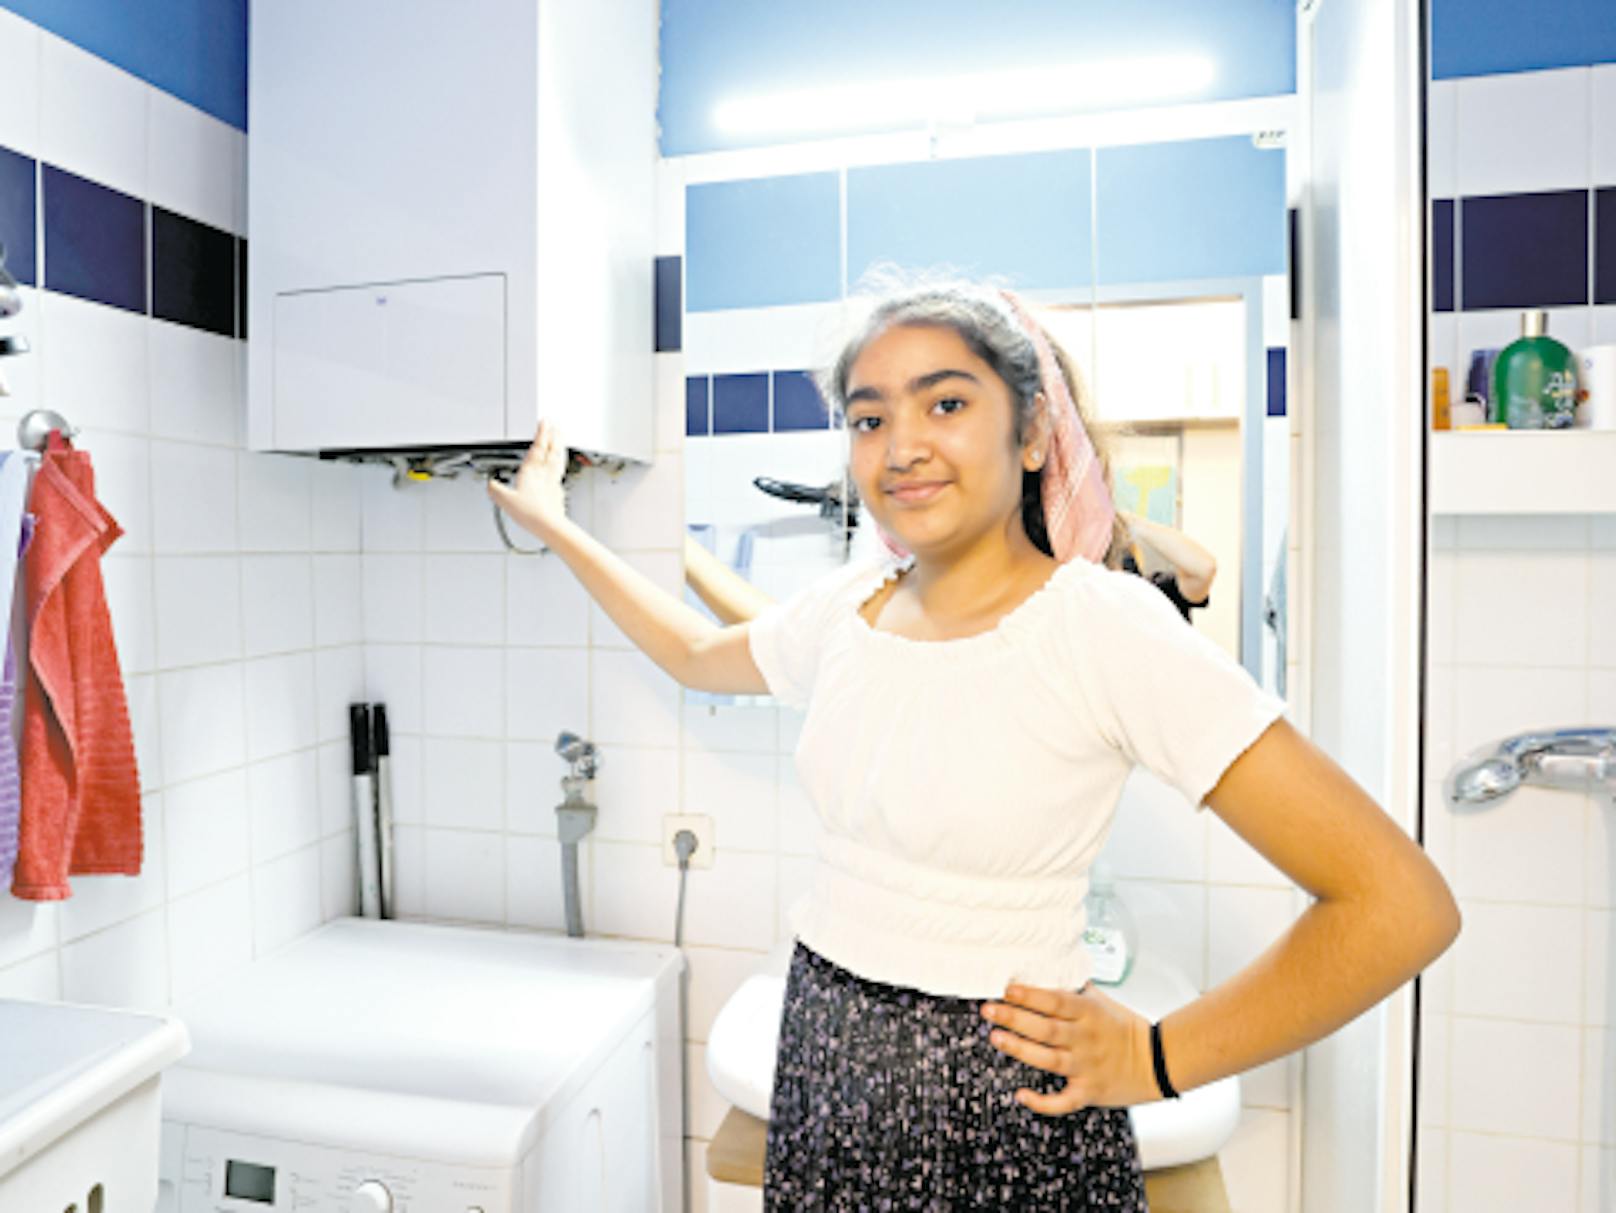 Eine defekte Gastherme vergiftete die Atemluft im Badezimmer. Die 11-jährige Kusum atmete das Giftgas Kohlenmonoxid ein und kollabierte unter der Dusche.